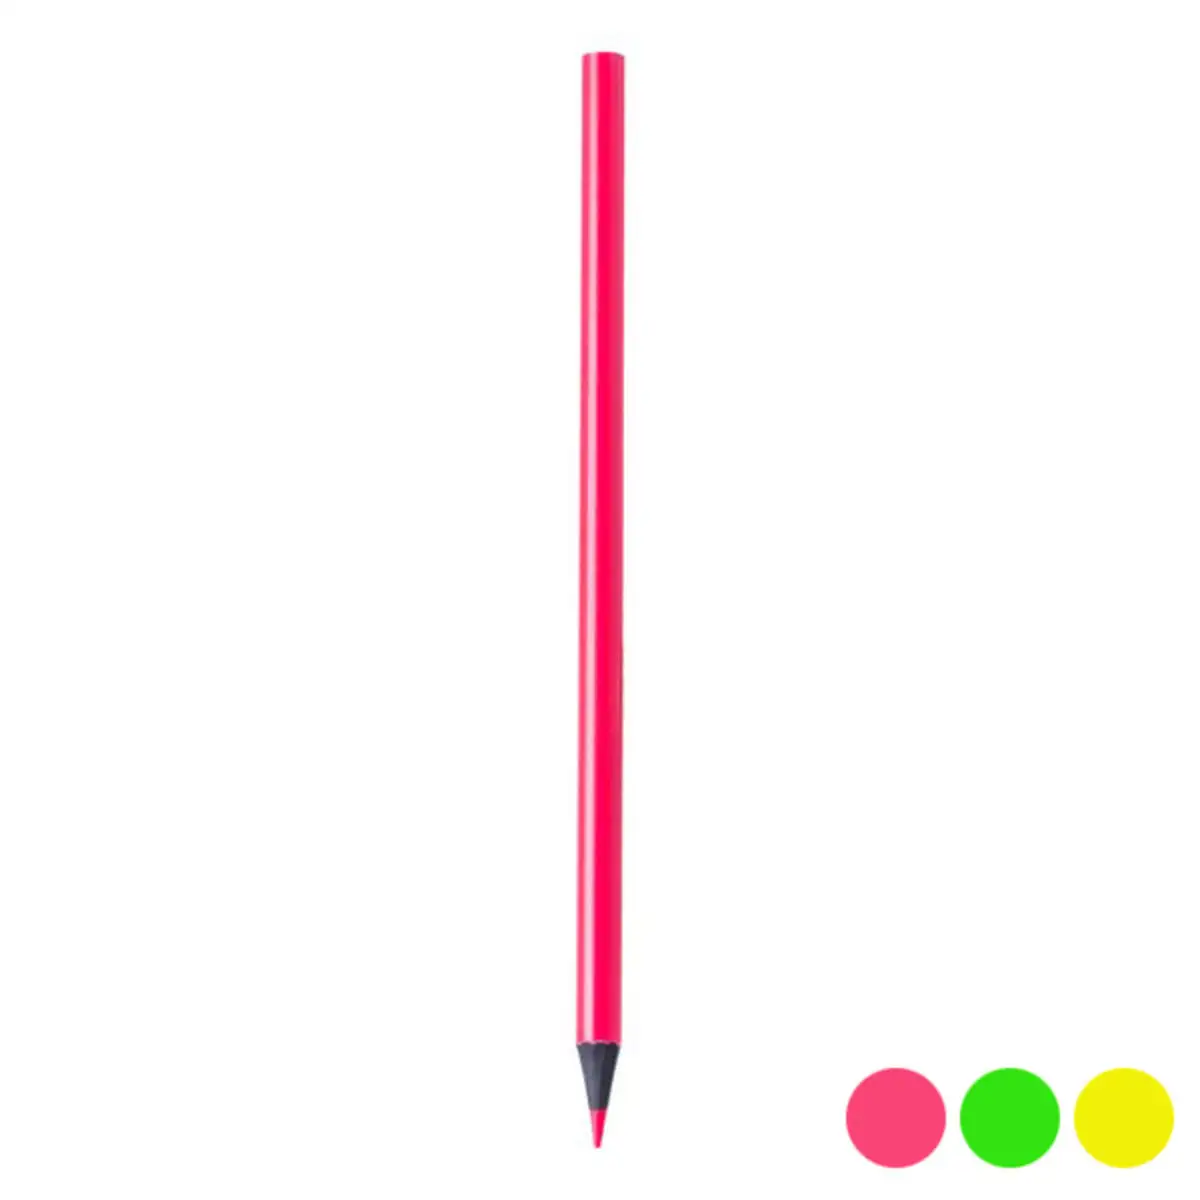 Crayon marqueur vuduknives 144906_6565. DIAYTAR SENEGAL - L'Art de Vivre le Shopping Inspiré. Parcourez notre catalogue et choisissez des produits qui reflètent votre passion pour la beauté et l'authenticité.